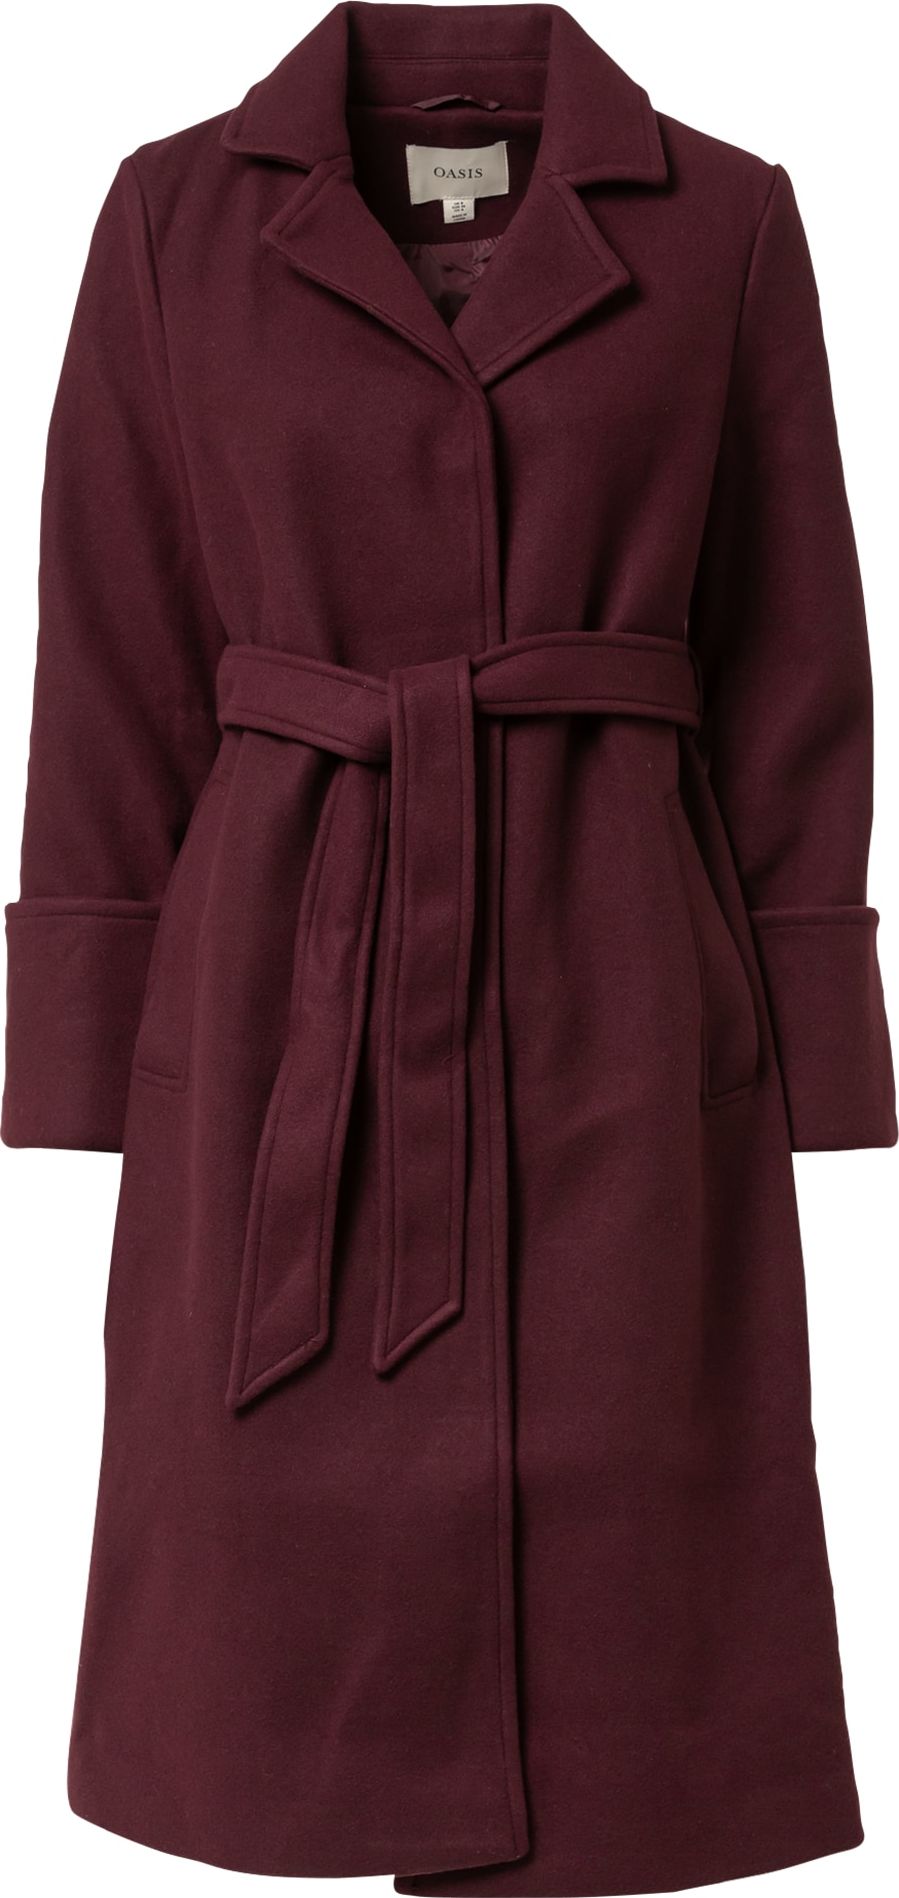 Přechodný kabát Oasis vínově červená